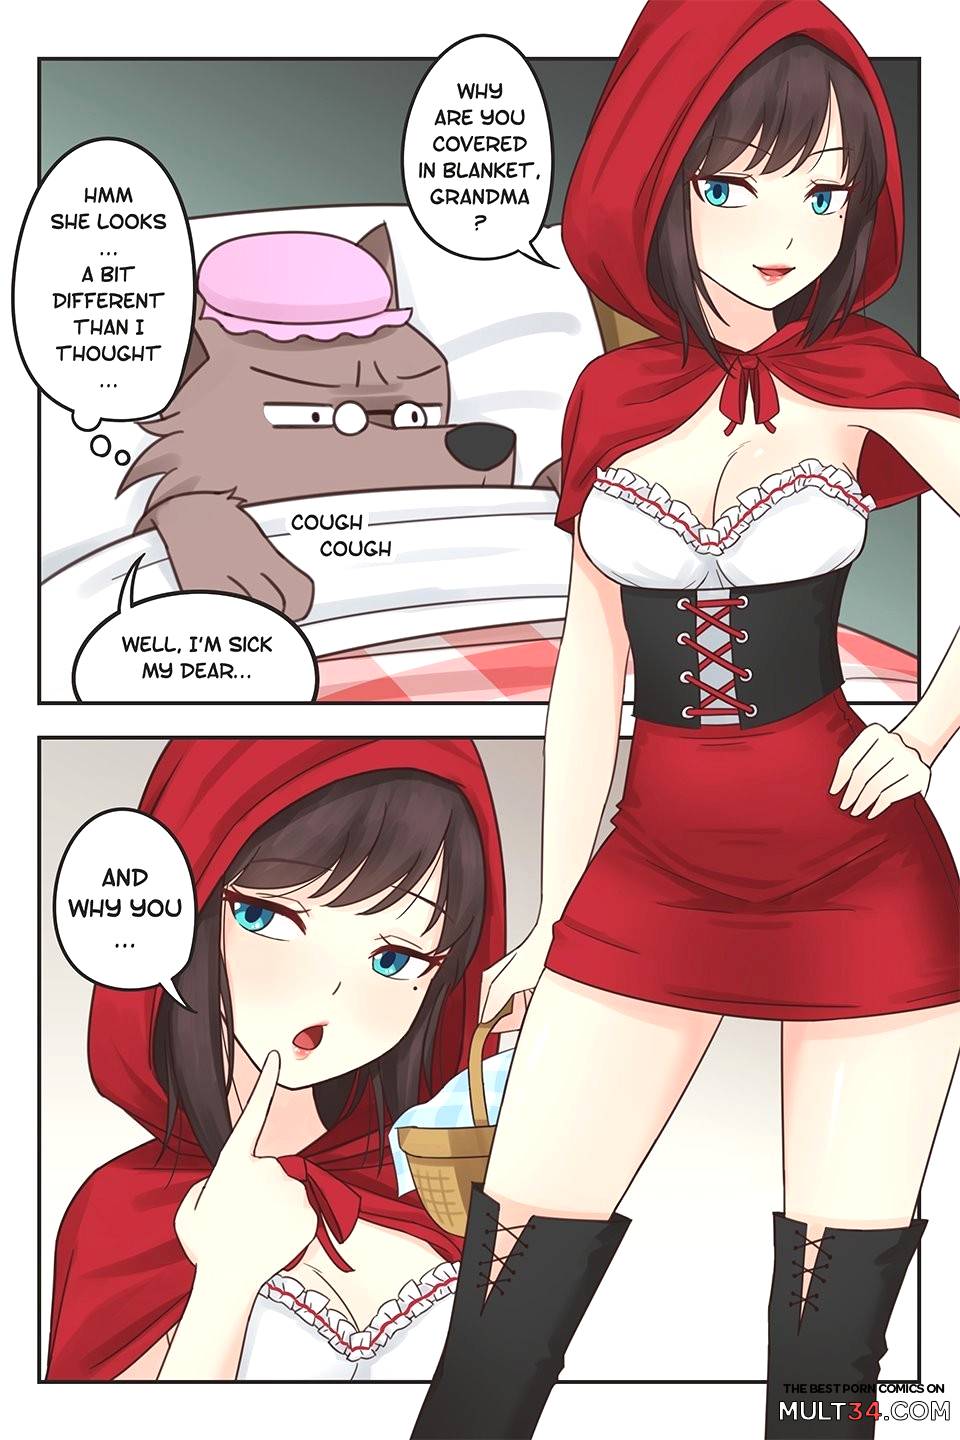 Xxx Red Cartoons - Little Red Riding Hood porn comic - the best cartoon porn comics, Rule 34 |  MULT34